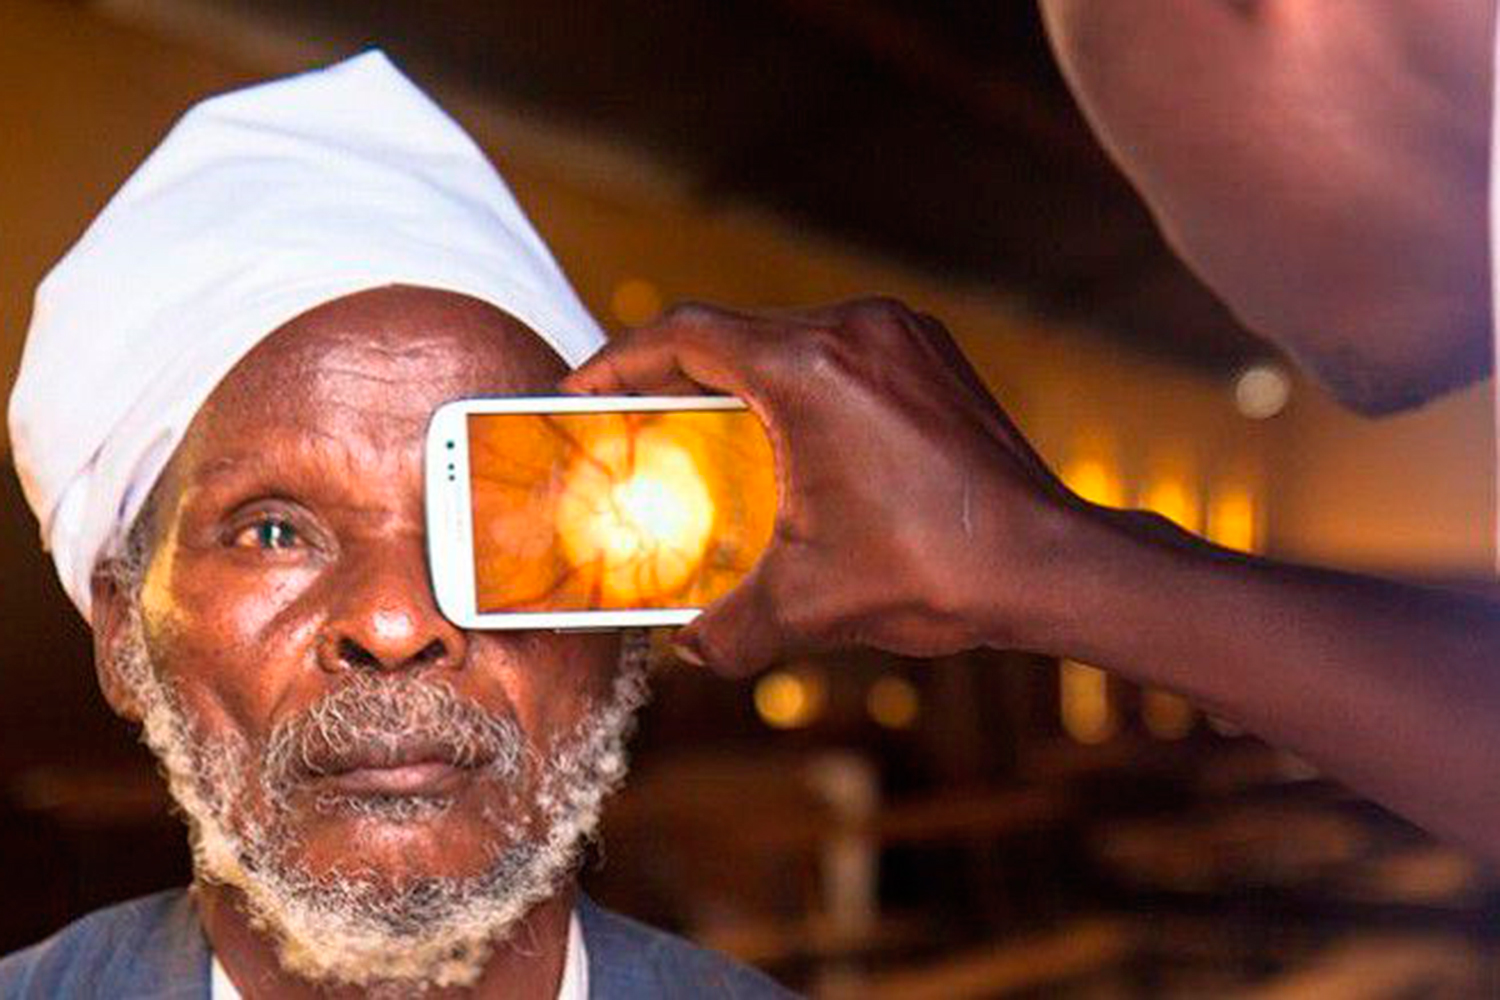 La aplicación que puede ayudar a prevenir la ceguera en los países pobres